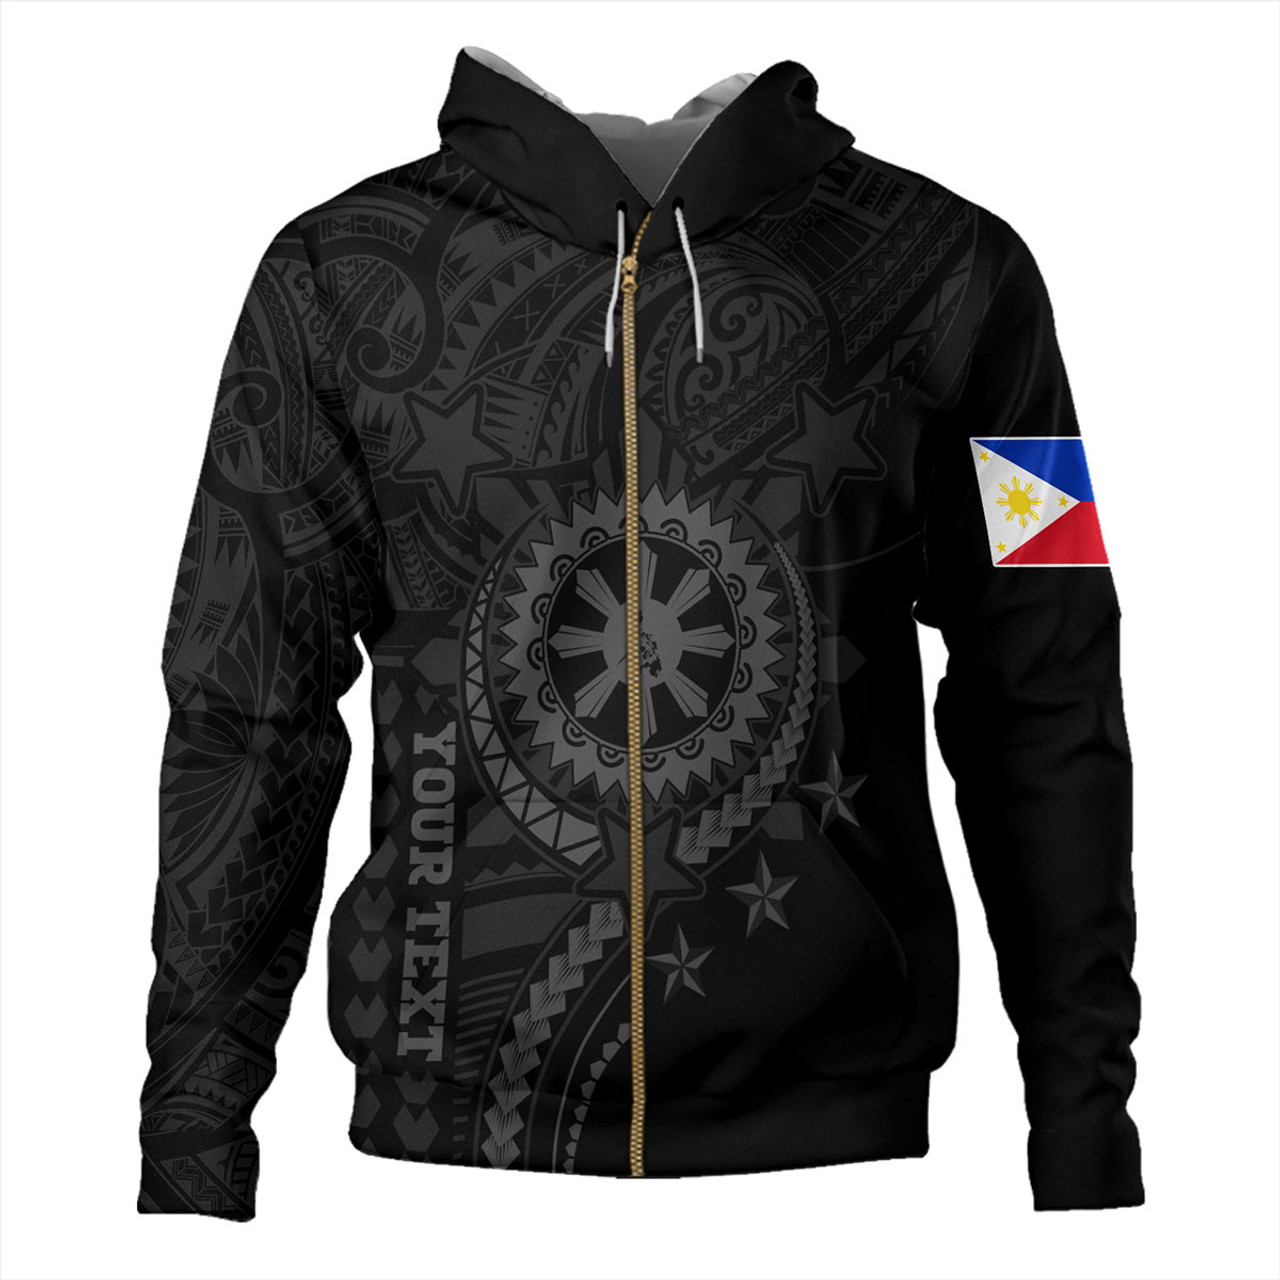 Philippines Filipinos Hoodie - Proud To Be Filipino Tribal Sun Batok Grey Style